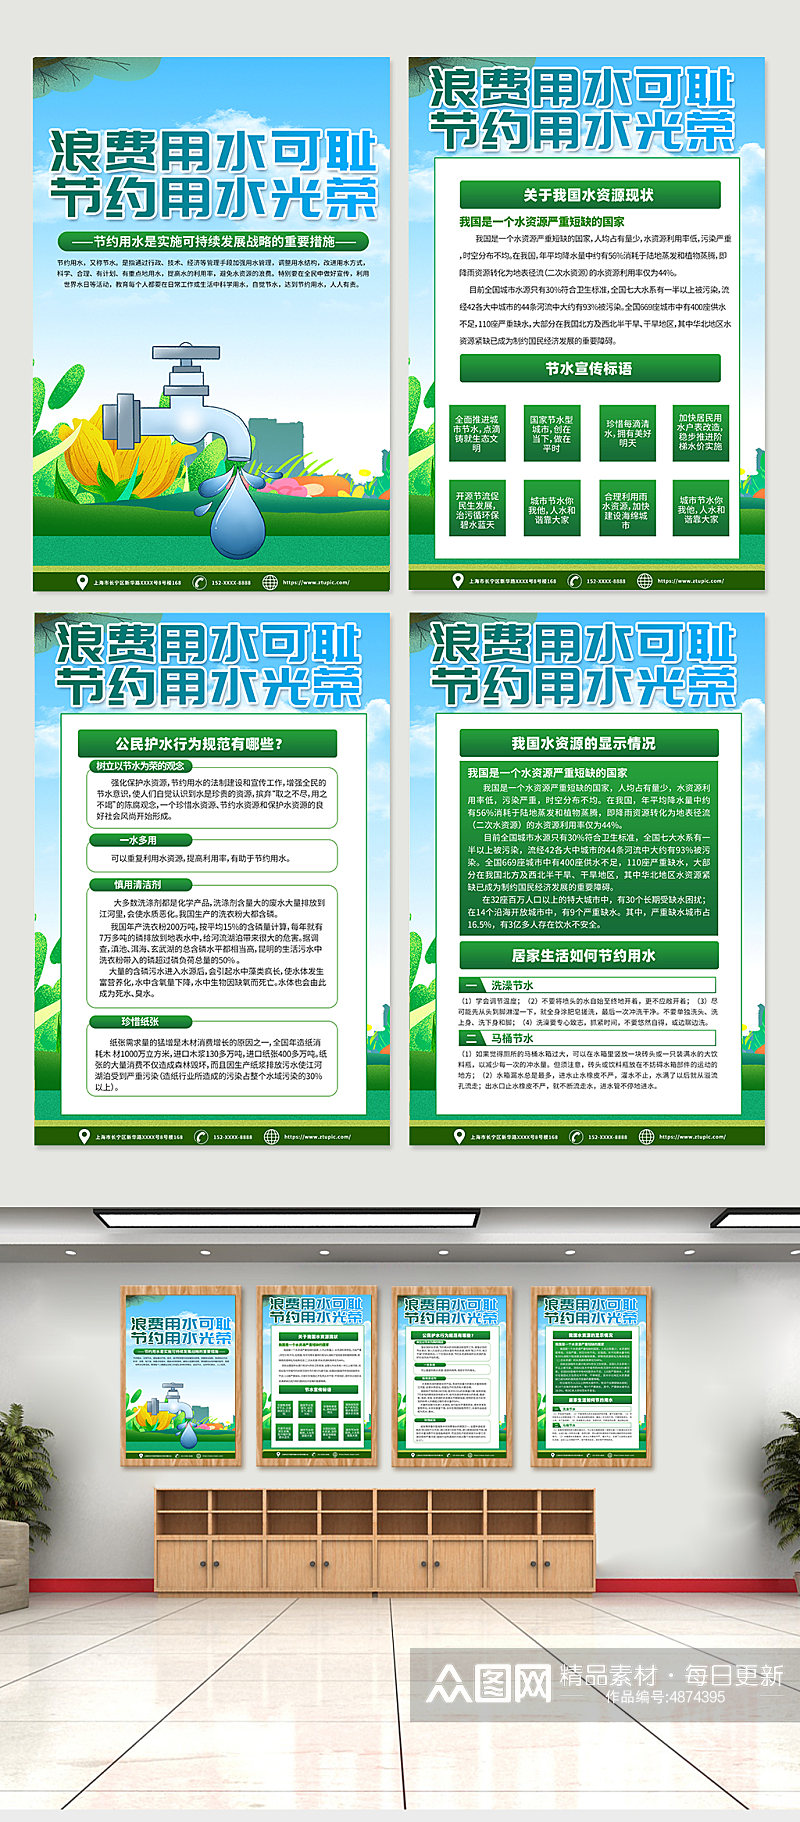 绿色环保节约用水保护水资源宣传海报设计素材